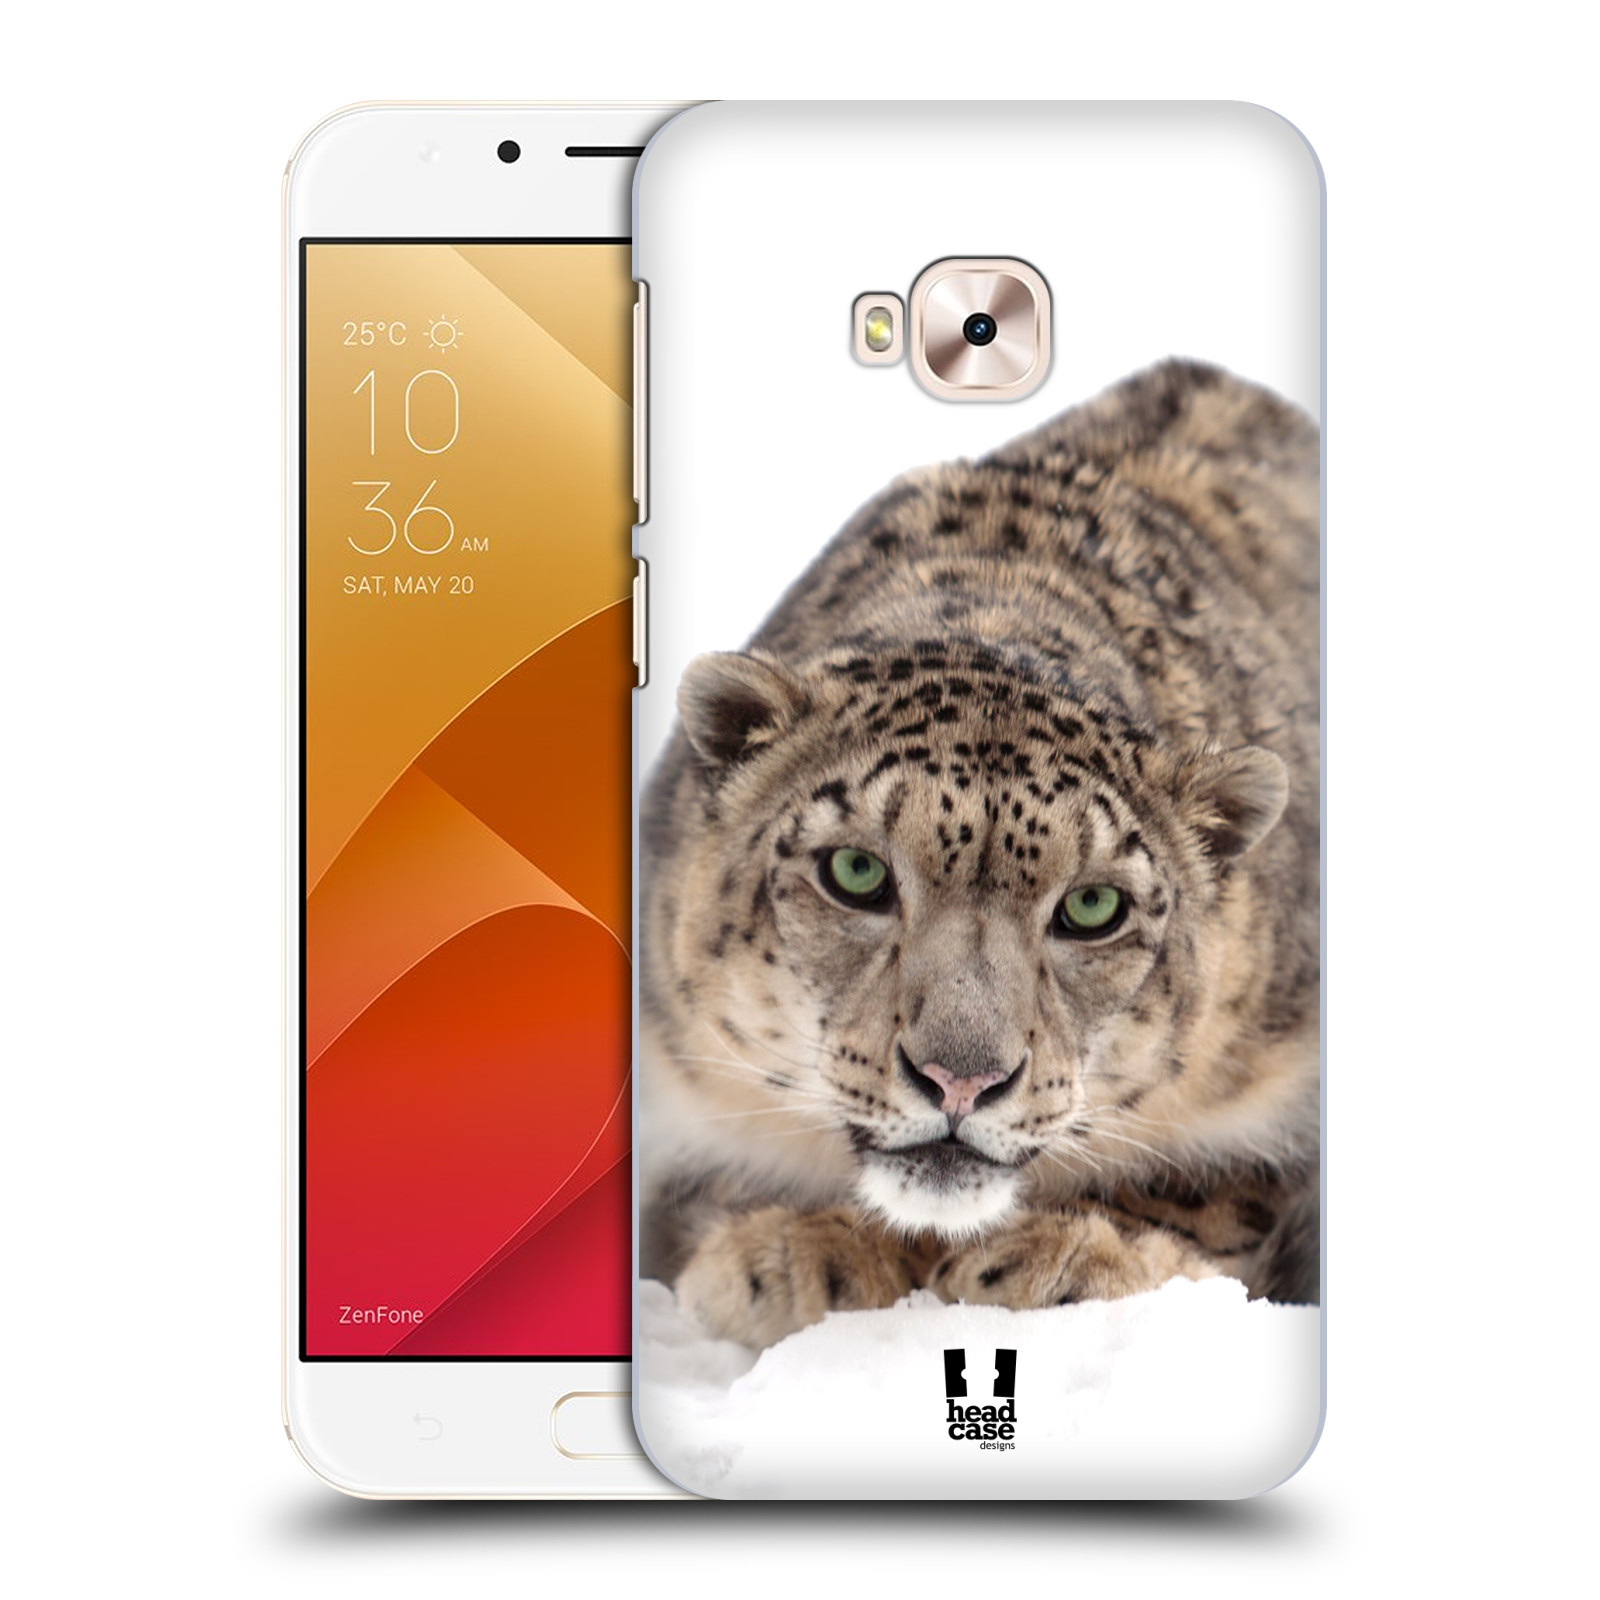 HEAD CASE plastový obal na mobil Asus Zenfone 4 Selfie Pro ZD552KL vzor Divočina, Divoký život a zvířata foto SNĚŽNÝ LEOPARD